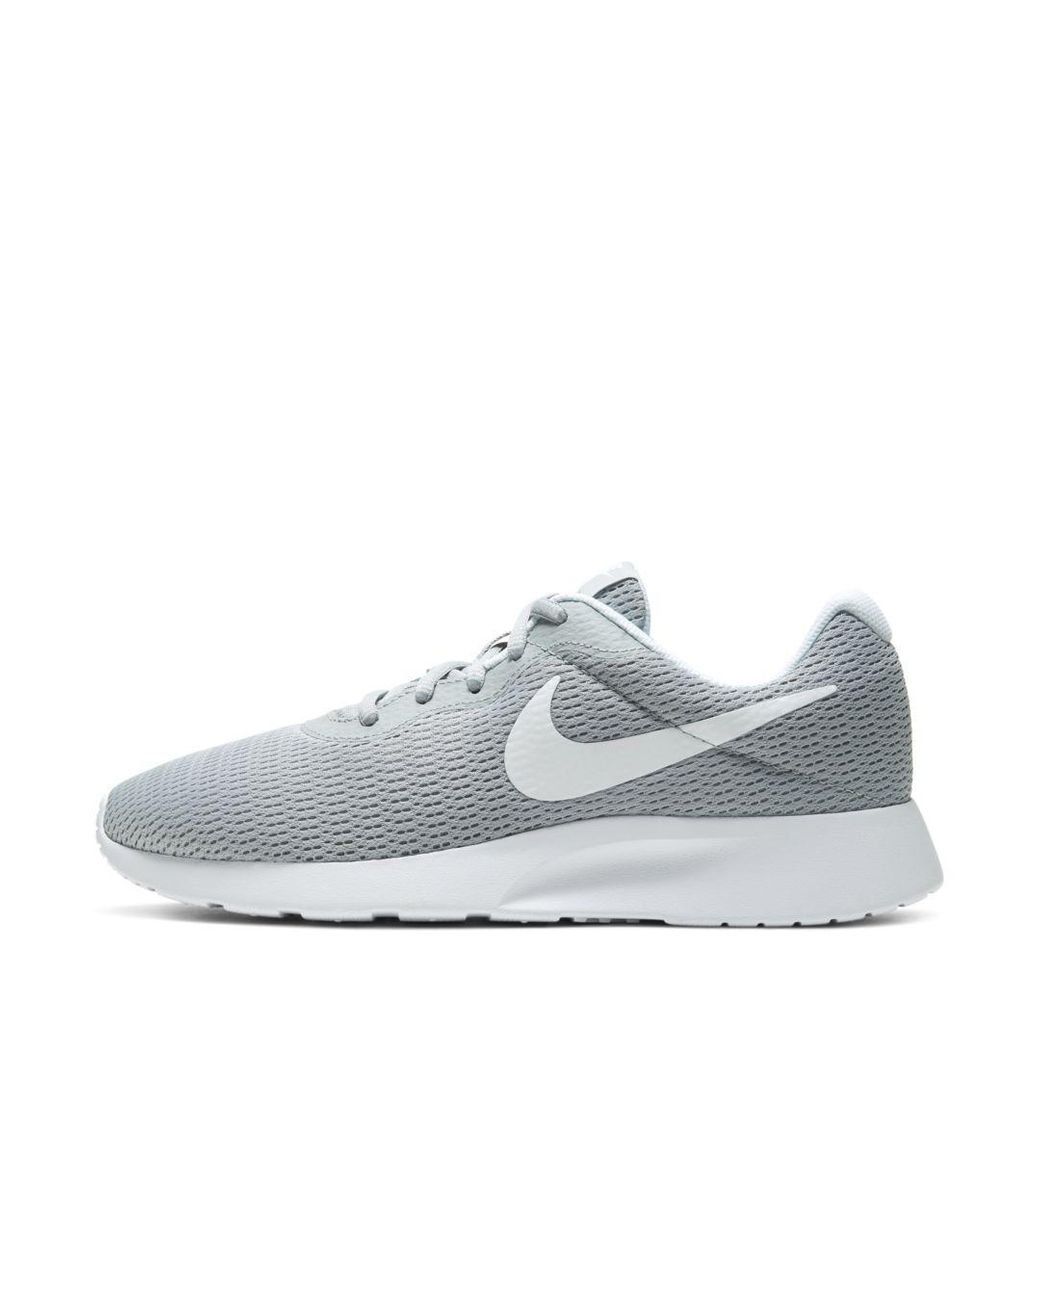 Nike Tanjun Wide (2e) Shoe in Grey 